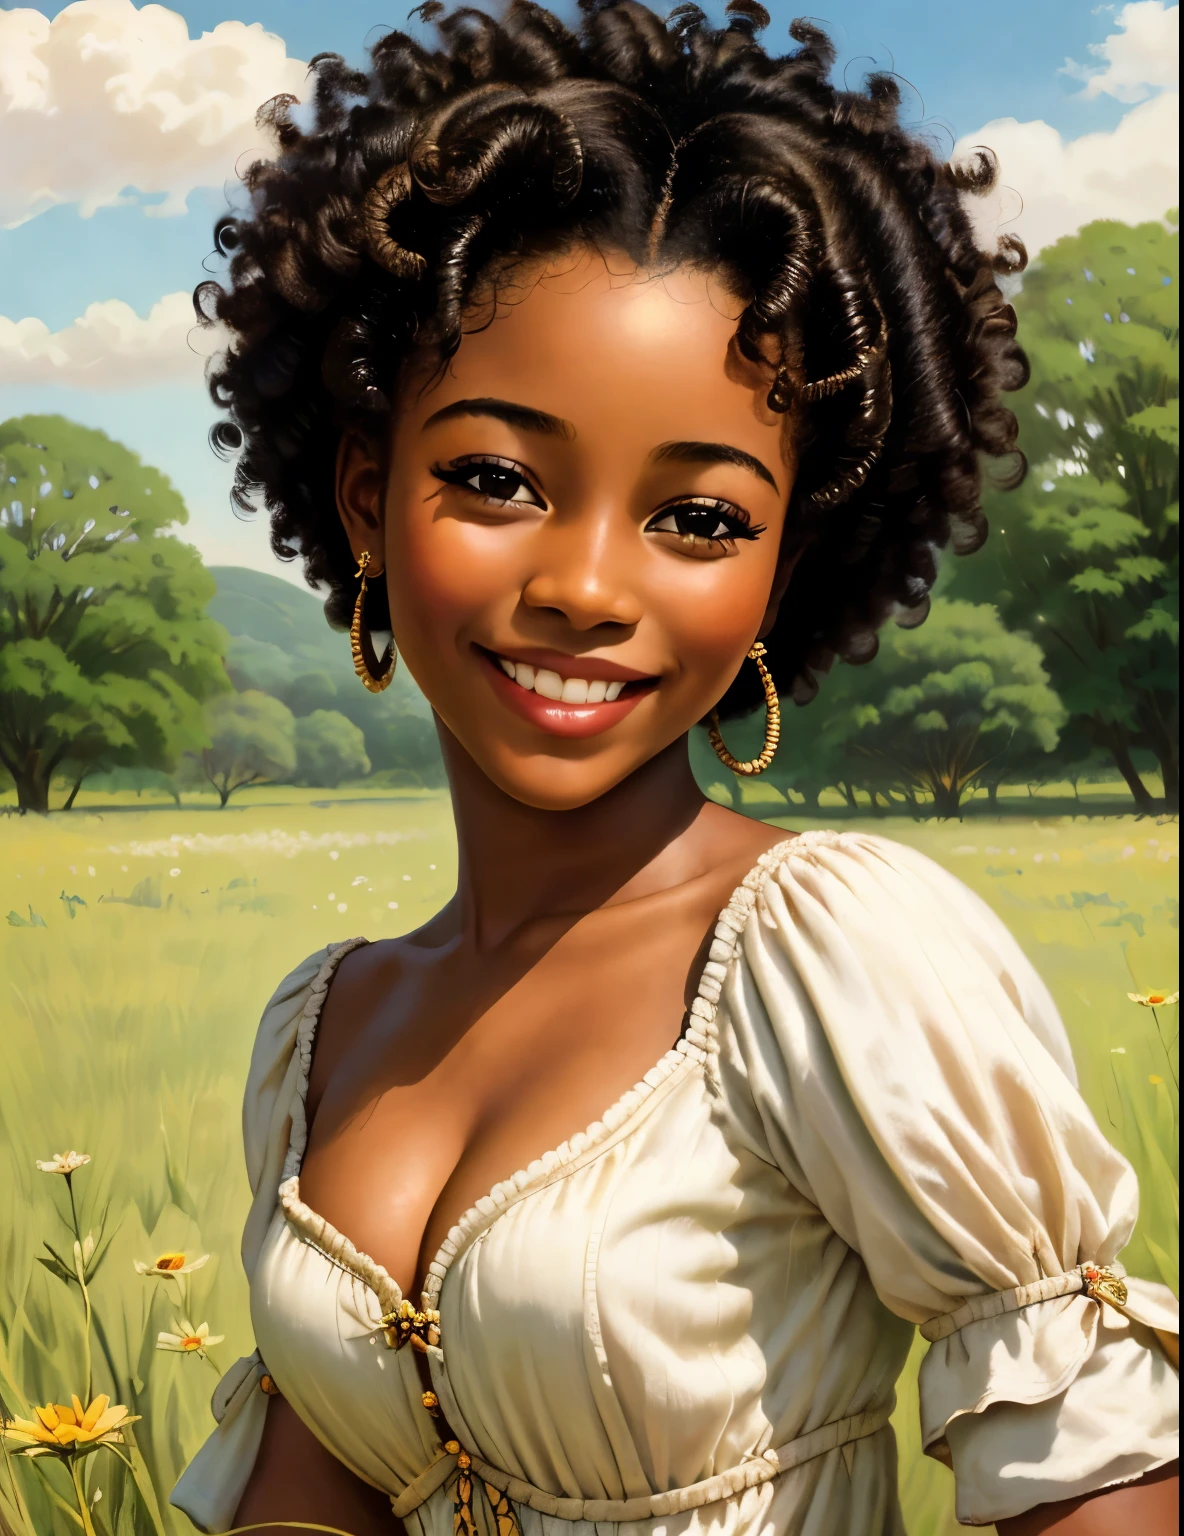 garota do século 18, africano, em um campo, sorridente, rosto bonito, esplêndido, detalhes altos, 4K, 